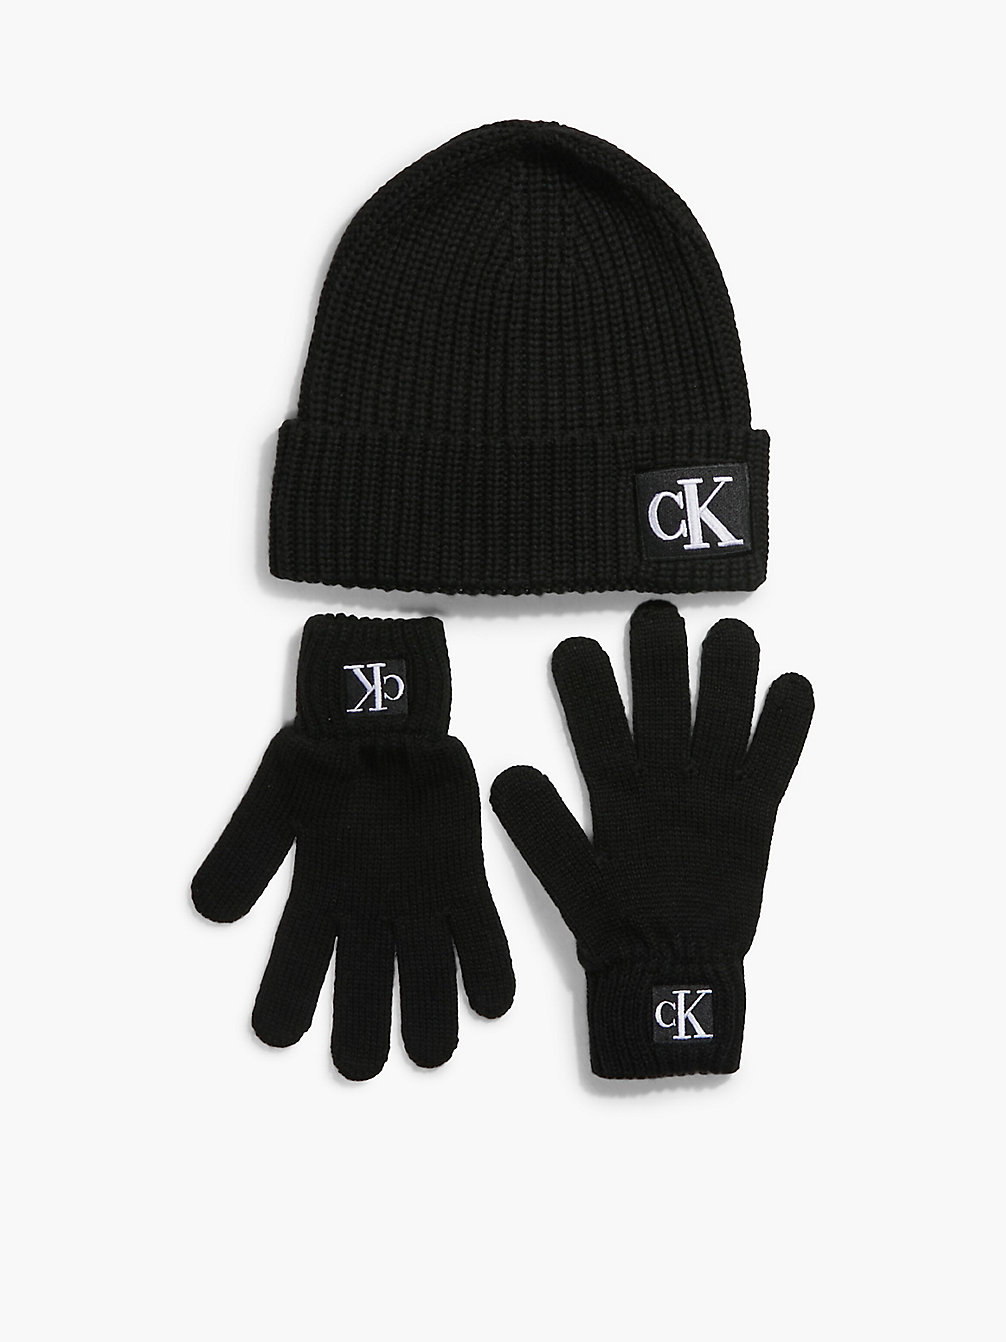 CK BLACK Set Van Unisex Muts En Handschoenen undefined kids unisex Calvin Klein